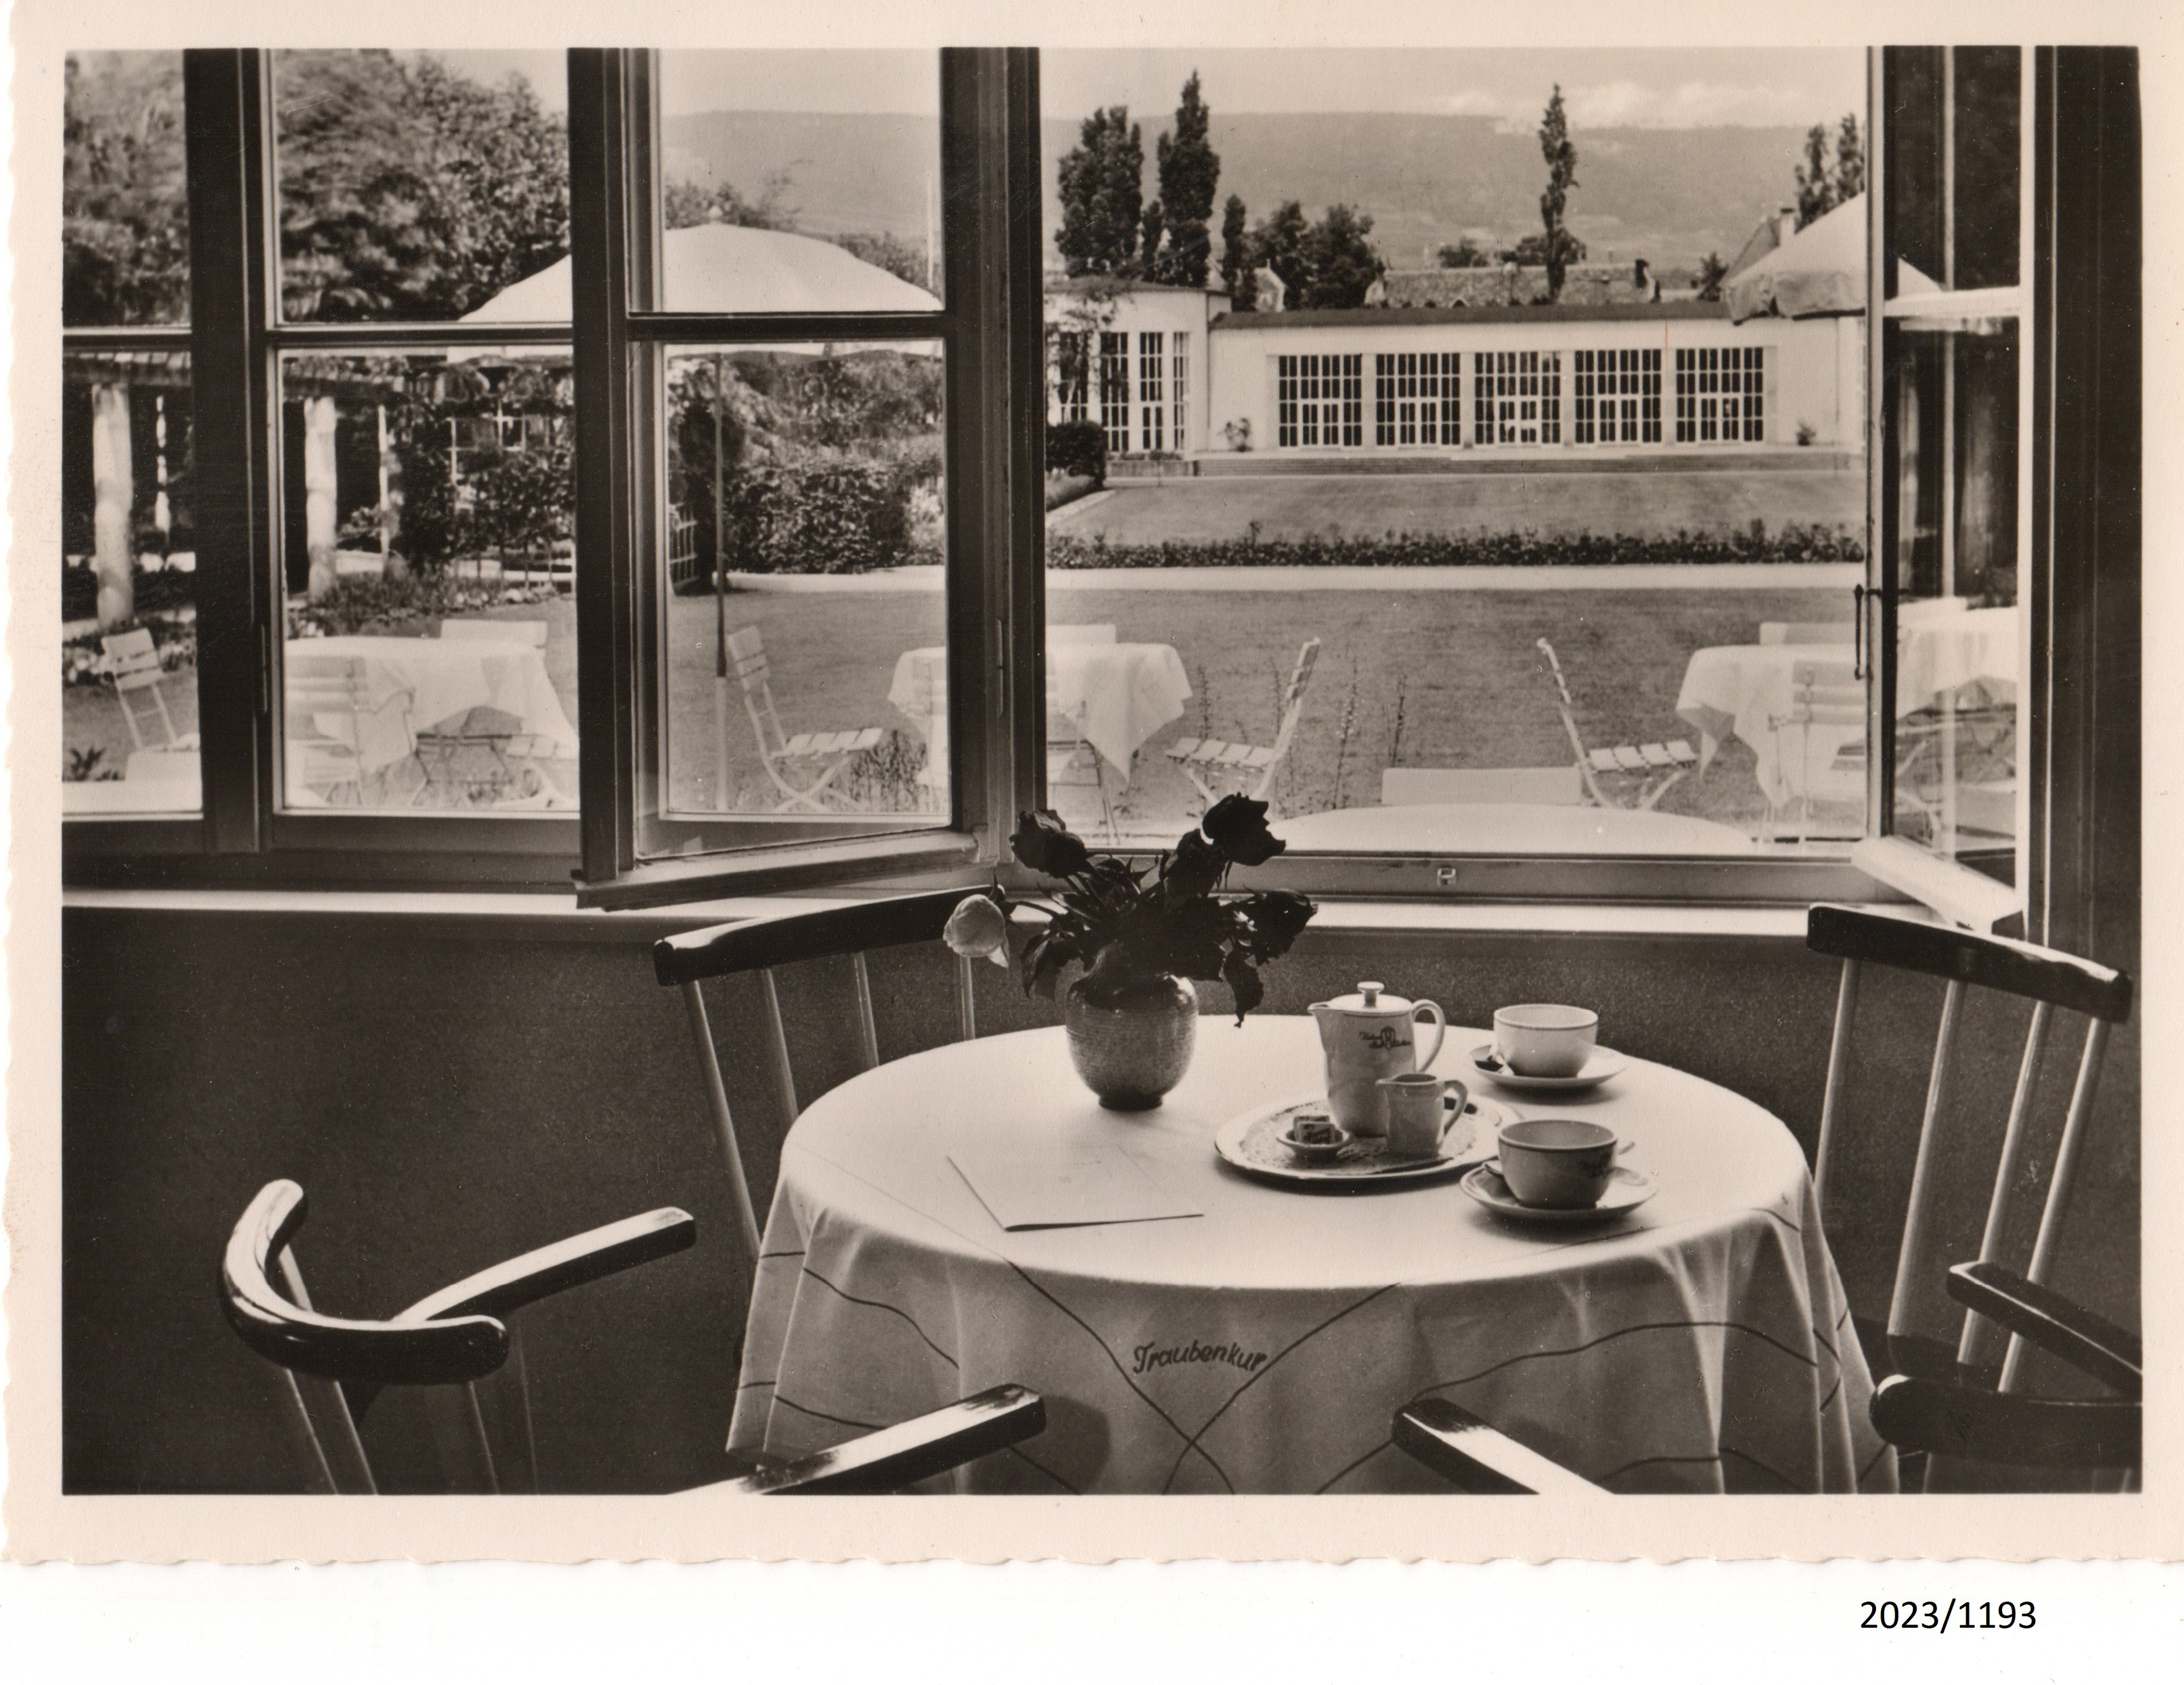 Bad Dürkheim, Blick vom Café Traubenkur zur Brunnenhalle, 1950er Jahre (Stadtmuseum Bad Dürkheim im Kulturzentrum Haus Catoir CC BY-NC-SA)